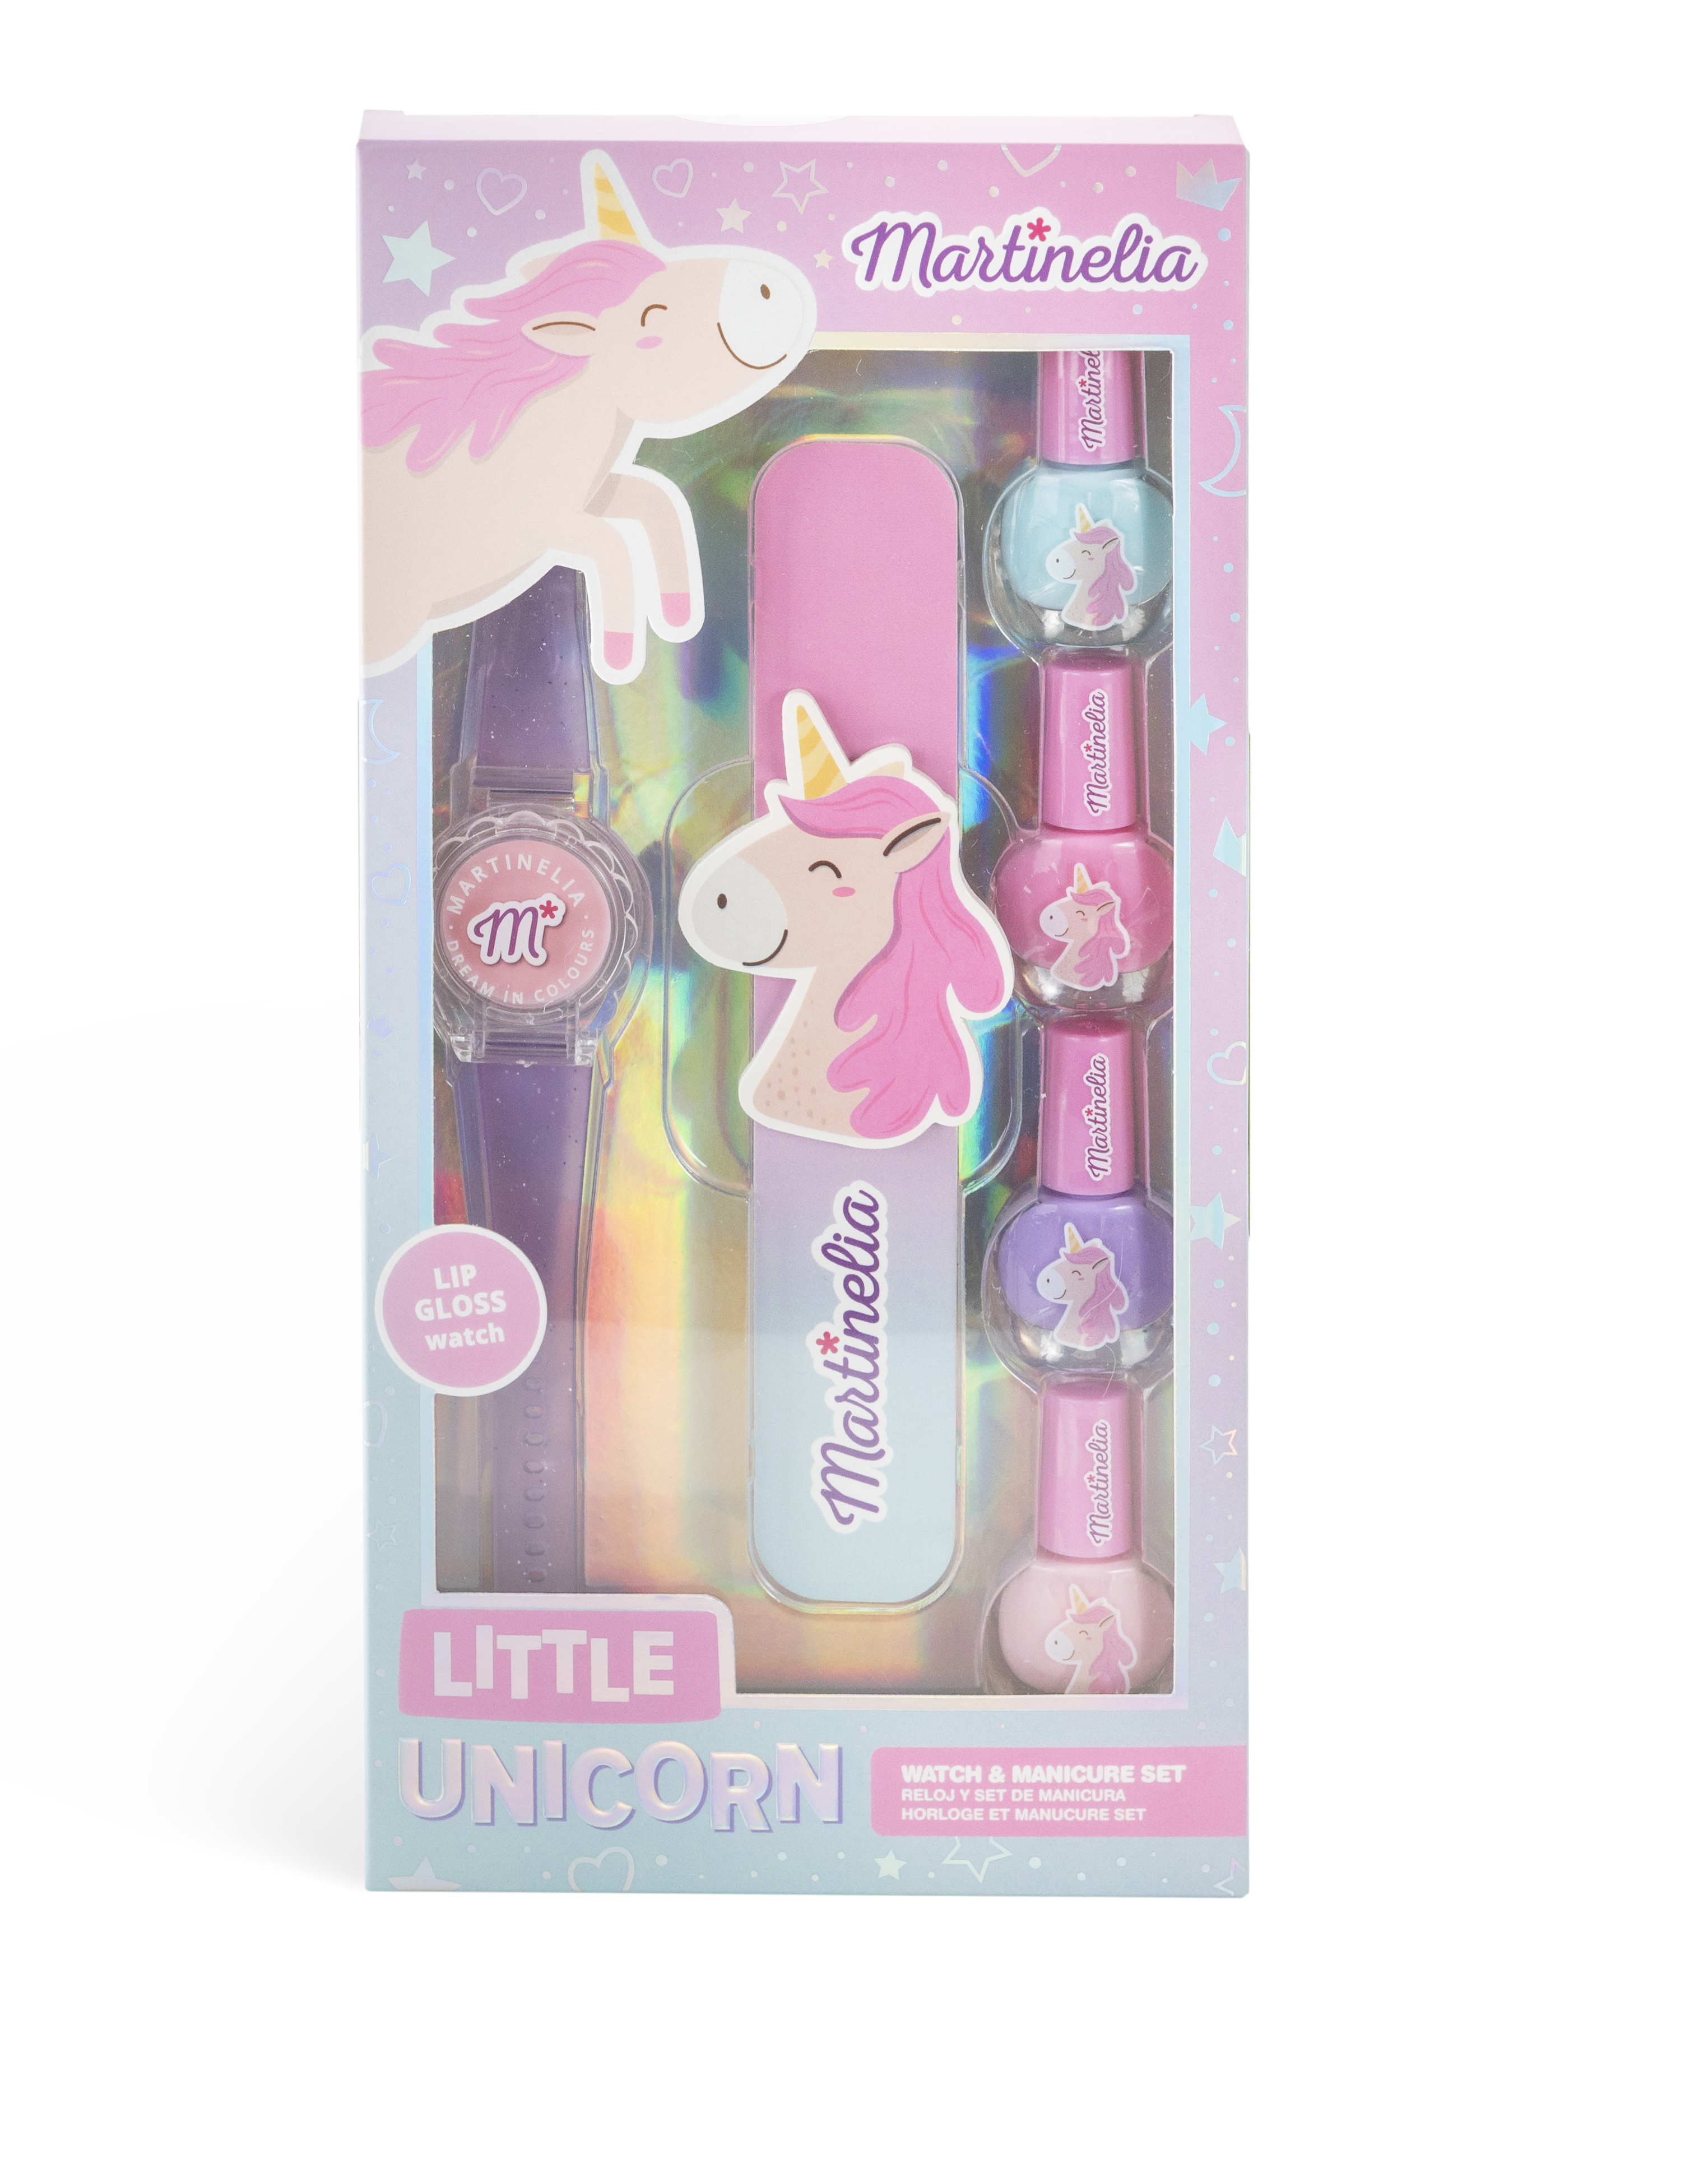 martinelia little unicorn watch